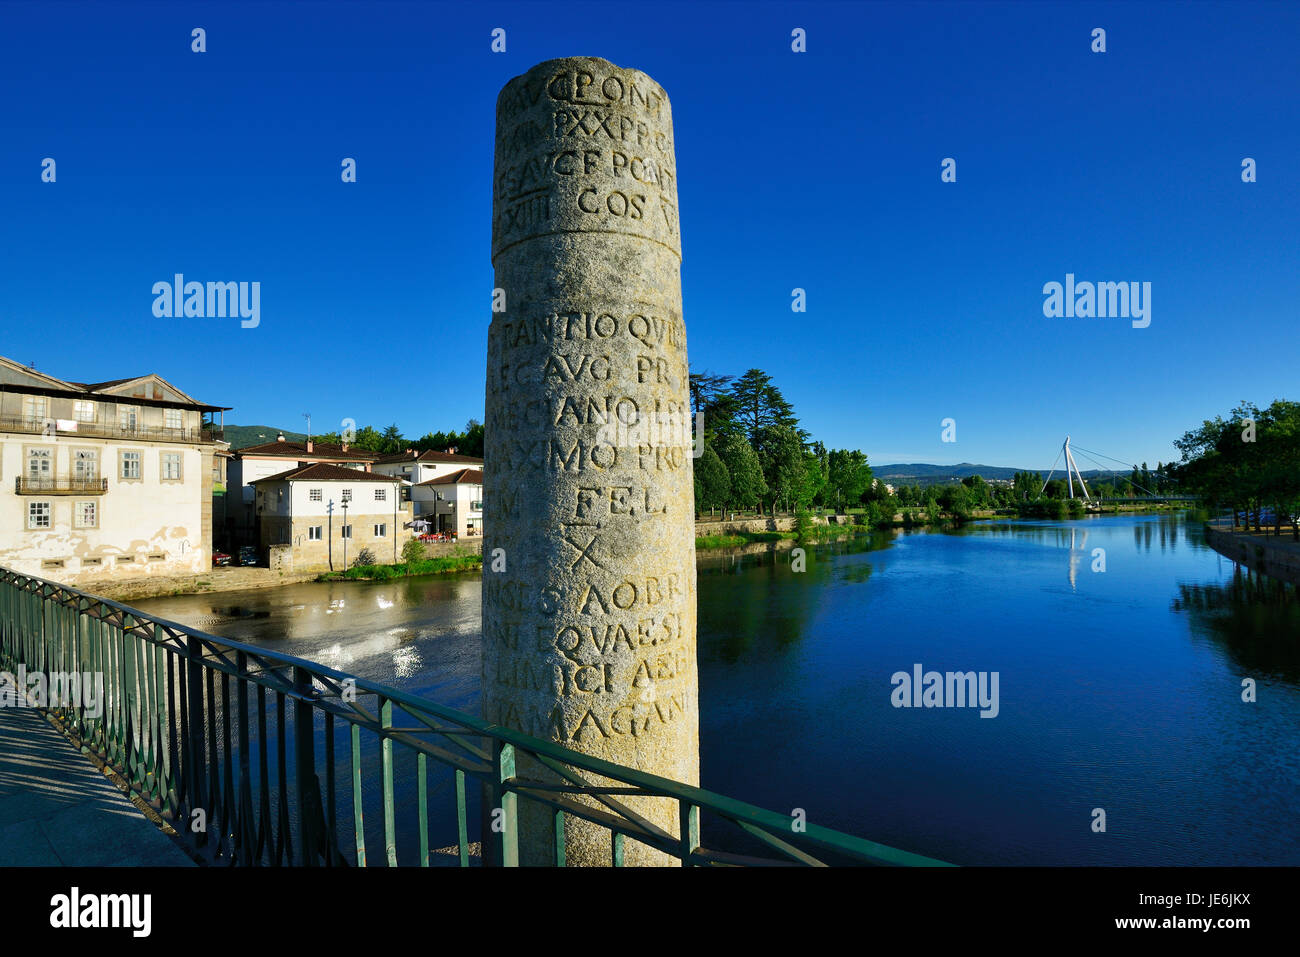 Un pilar con inscripciones romanas en el puente romano de Chaves, también conocido como puente de Trajano, que datan del siglo I A.C. Portugal Foto de stock